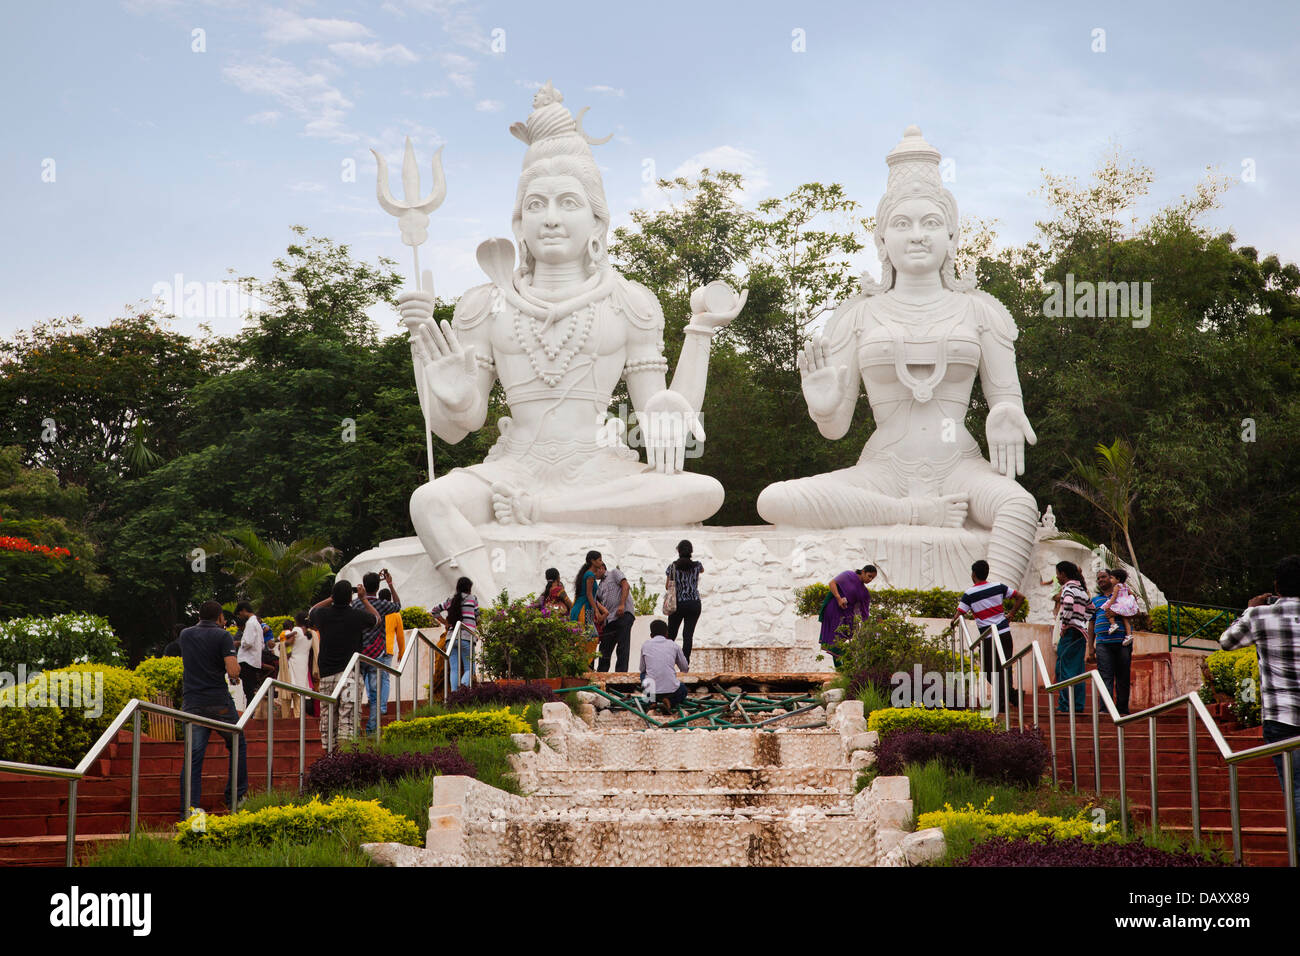 Des statues de Seigneur Shiva et Parvathi de déesse dans un parc, Kailasagiri Park, Ranong, Andhra Pradesh, Inde Banque D'Images